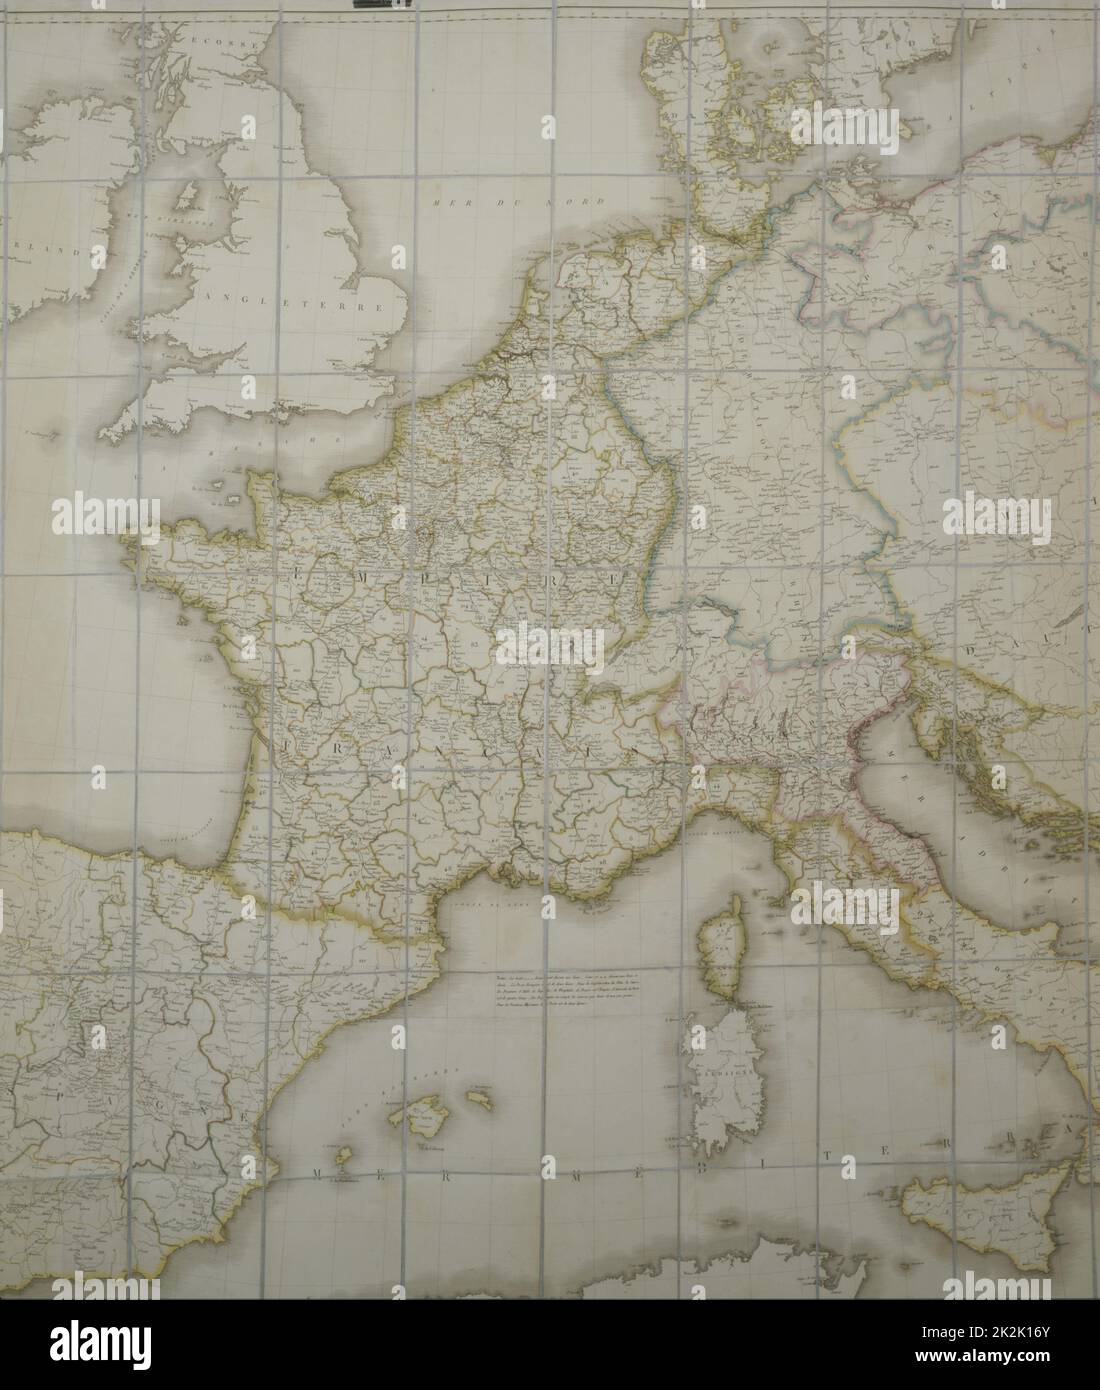 Mapa del Imperio Francés en 1812 copia personal del Emperador para su estudio topográfico Papel forrado de seda (110 x 80 cm) Una caja contiene el mapa (ver PJC03041 CHA288) Foto de stock